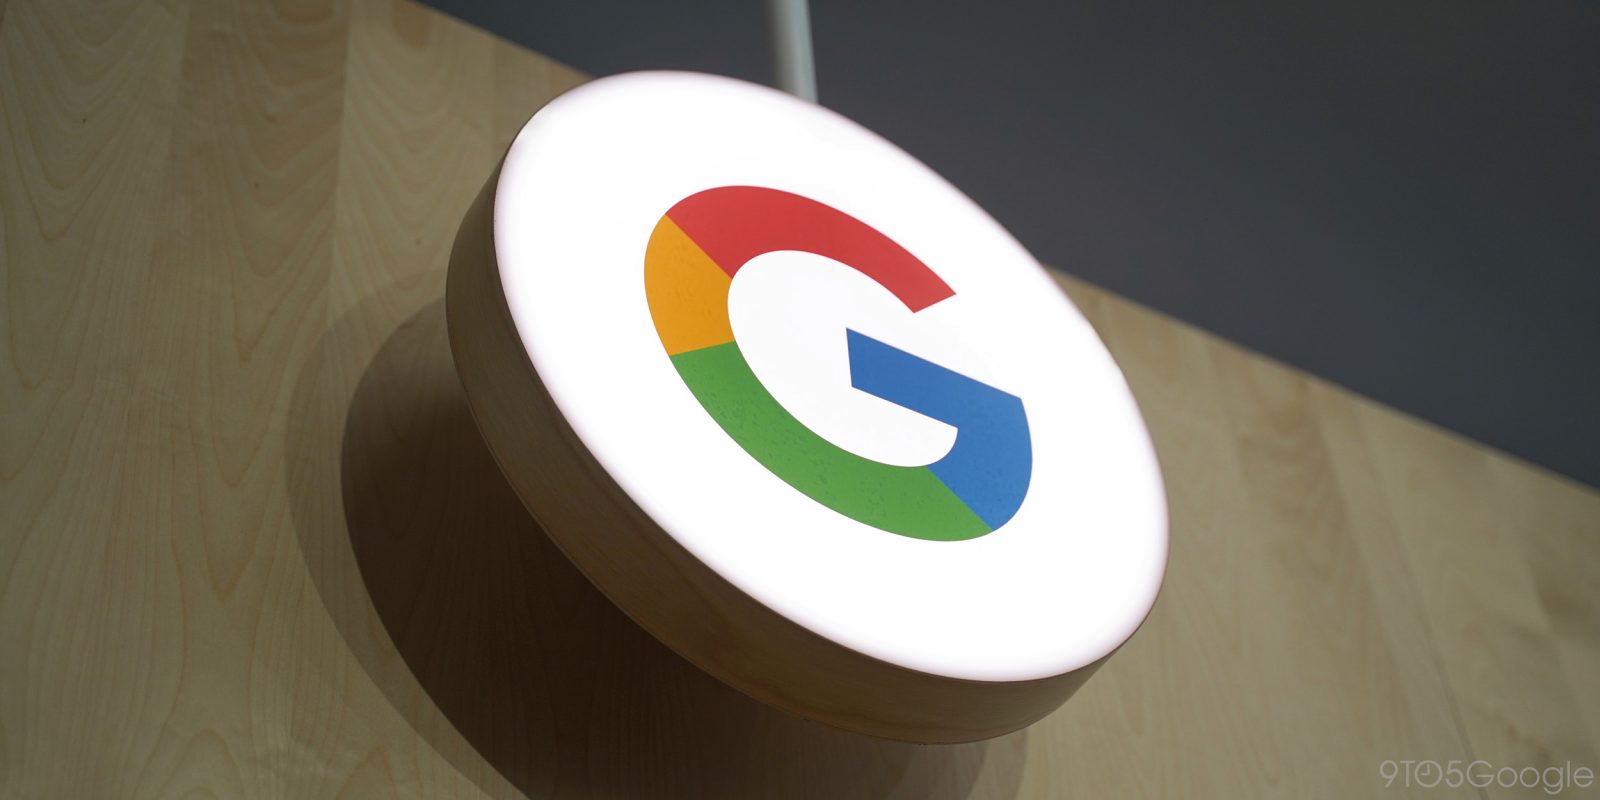  Google recebe multa bilionária por coletar dados pessoais de usuários